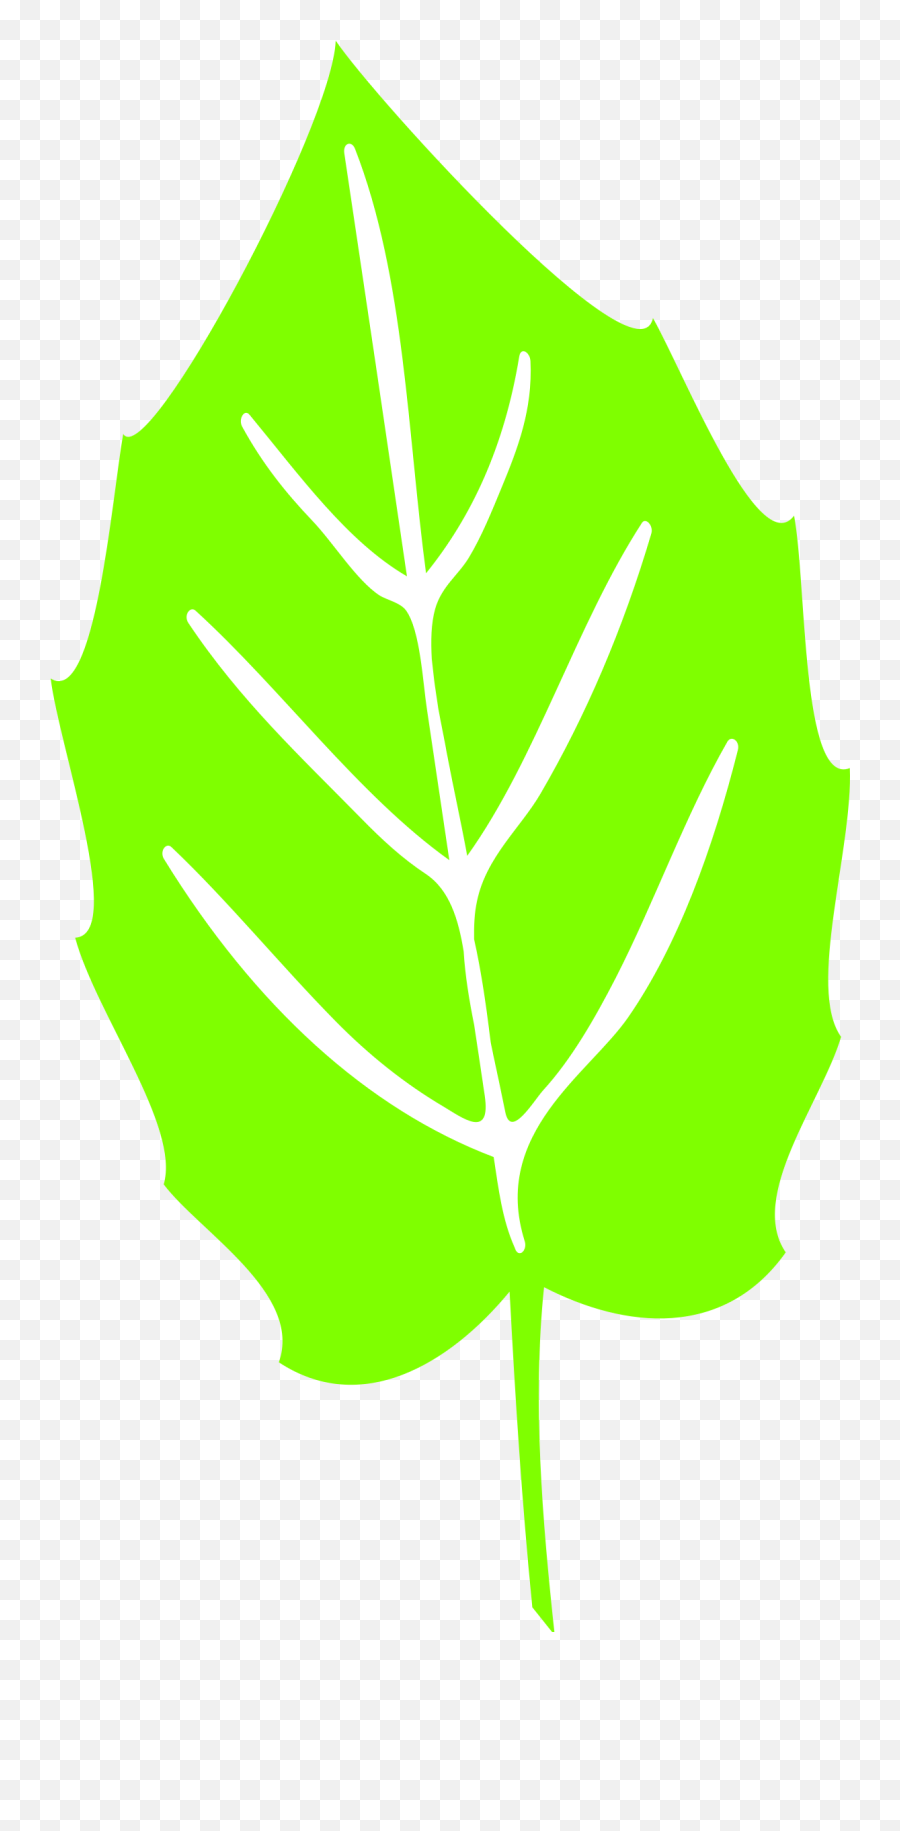 Free Leaf Symbol Png Download Clip Art Sunflower Leaf Svg Leaf Icon Png Free Transparent Png Images Pngaaa Com